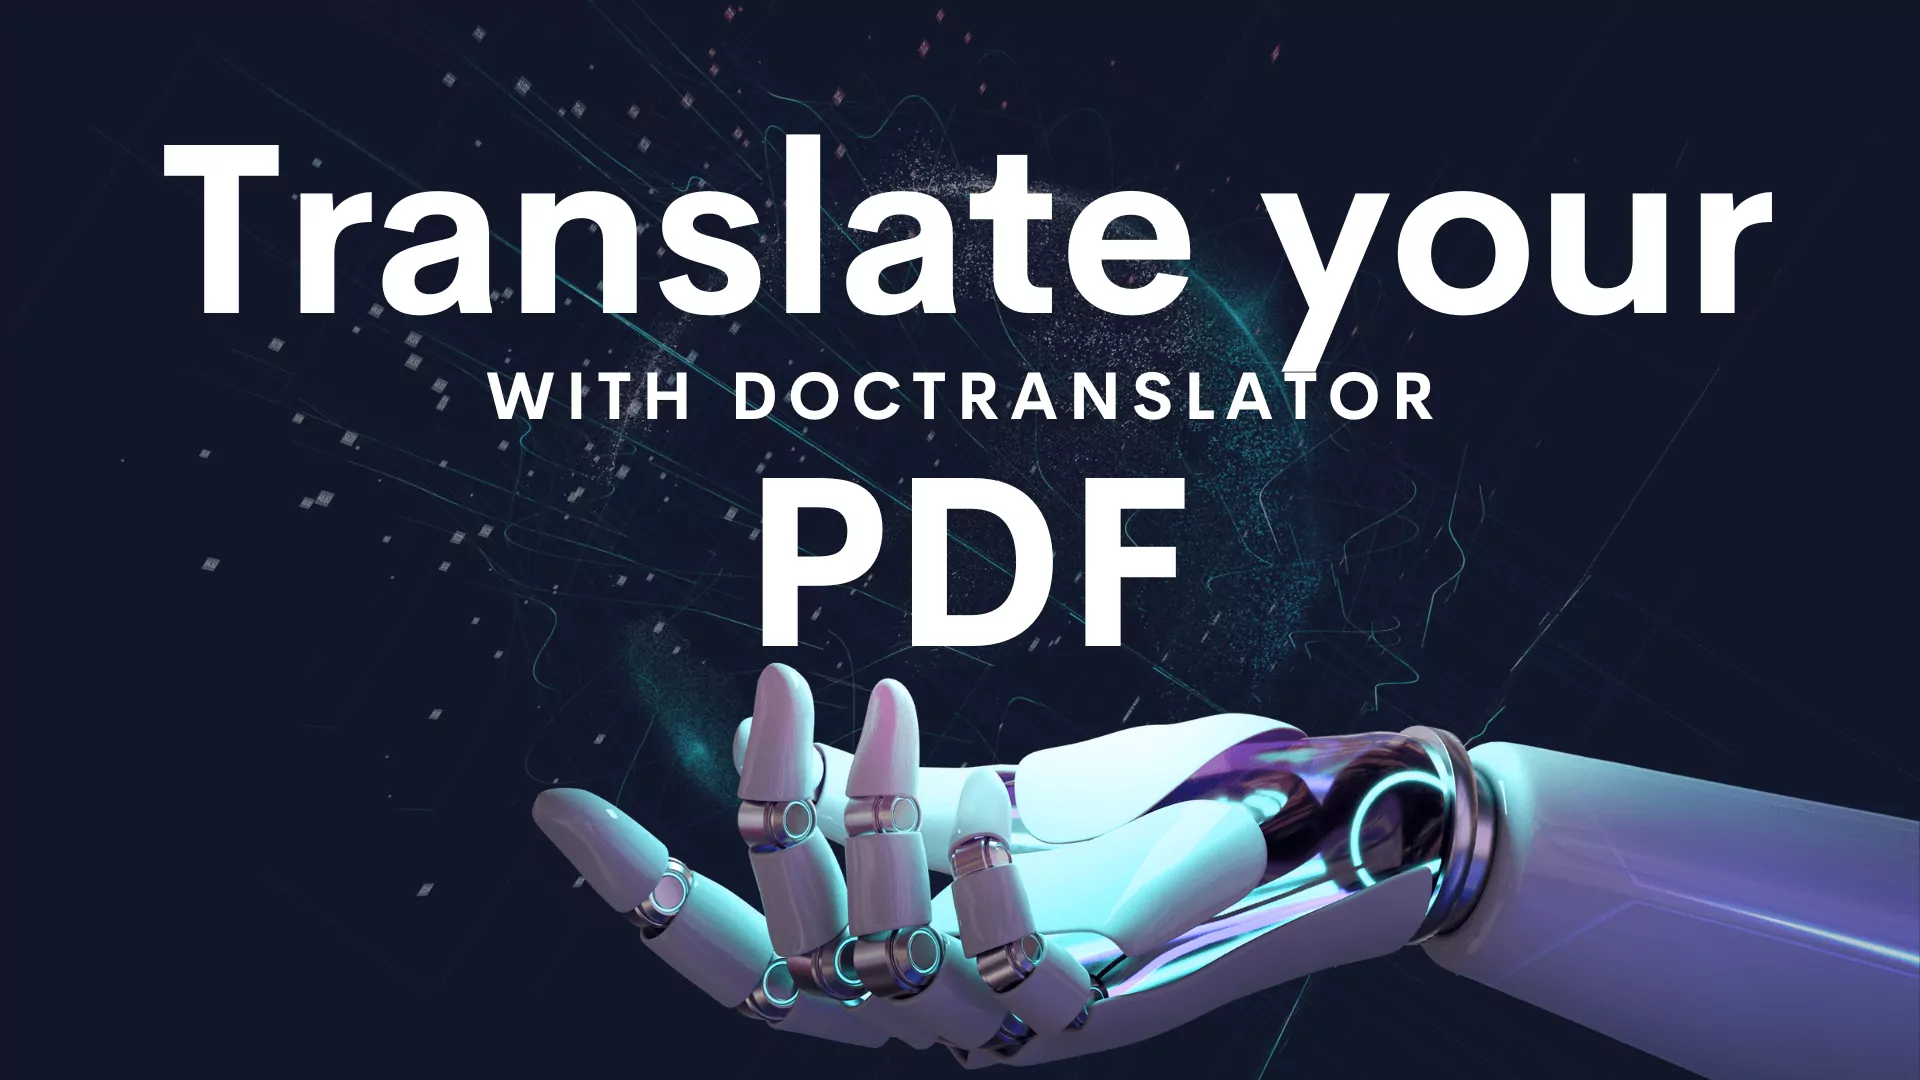 traduisez votre PDF avec doctranclator